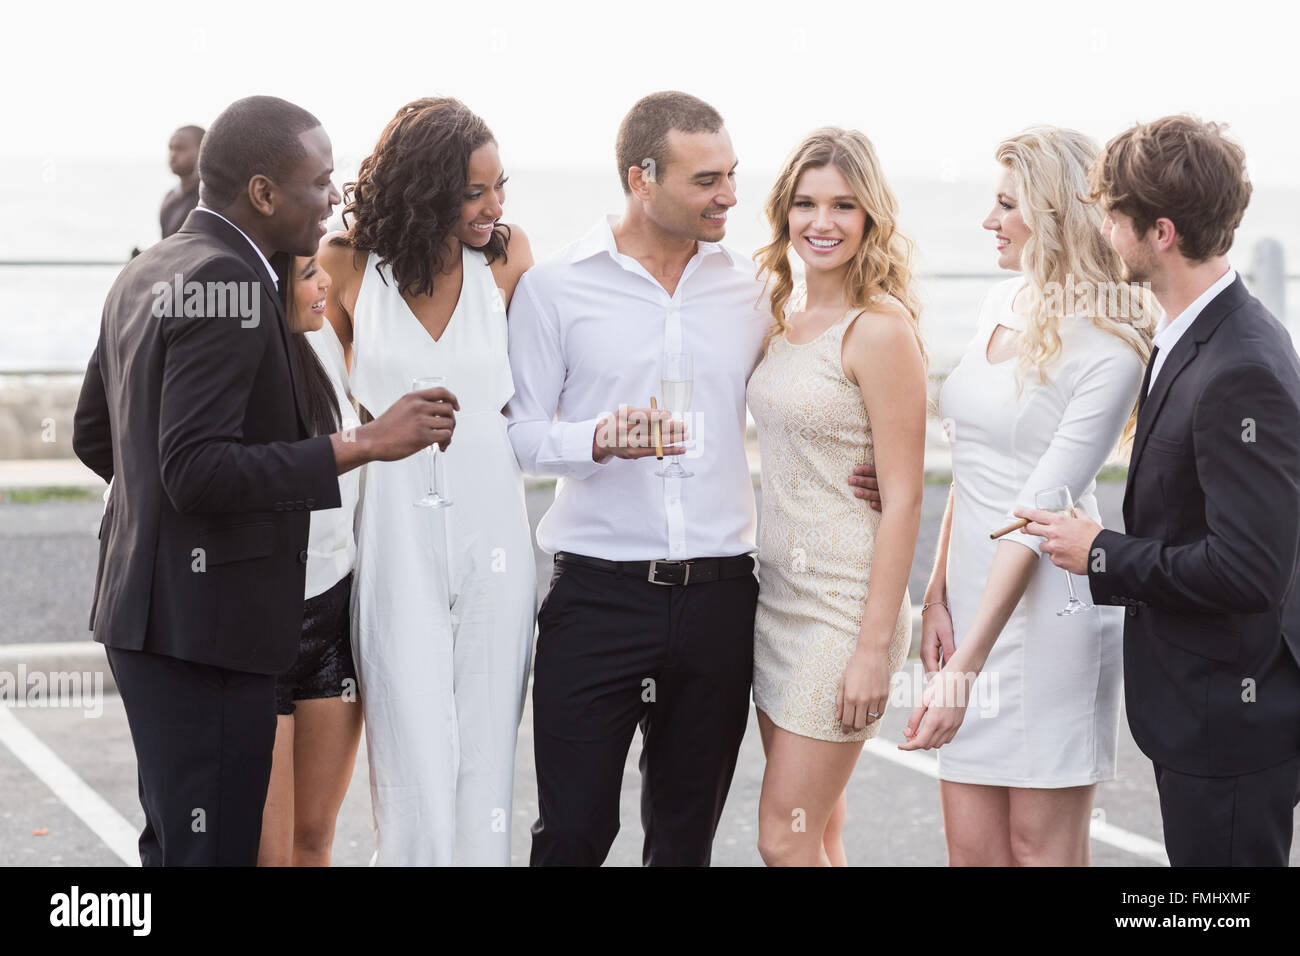 Personas bien vestidas posando junto a una limusina Fotografía de stock -  Alamy